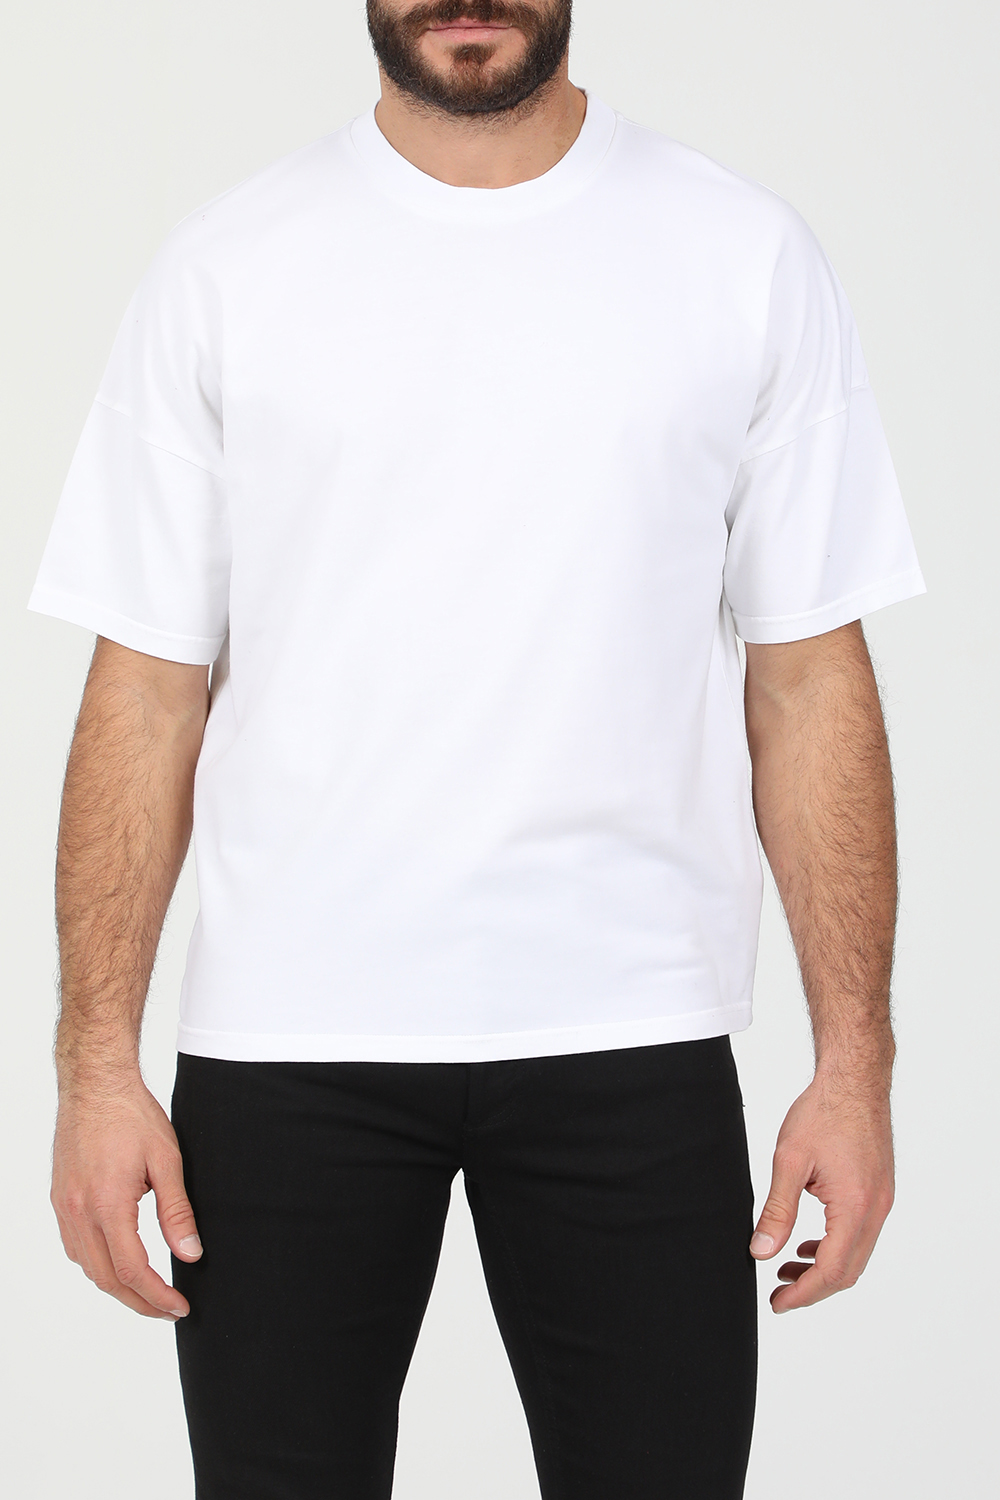 Ανδρικά/Ρούχα/Μπλούζες/Κοντομάνικες AMERICAN VINTAGE - Ανδρικό t-shirt AMERICAN VINTAGE λευκό